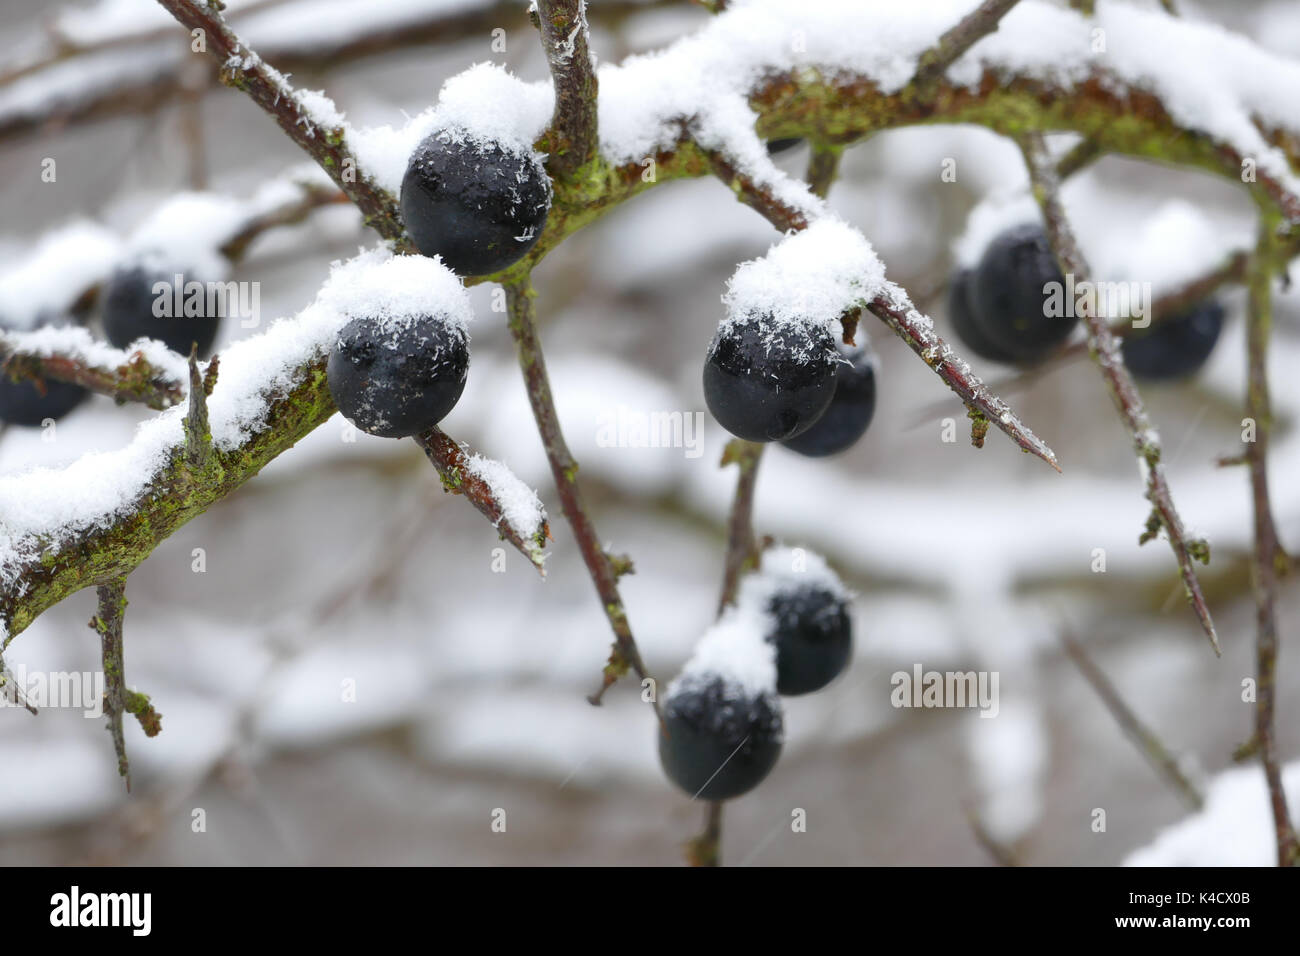 Endrinas maduras con frialdad y nieve Foto de stock